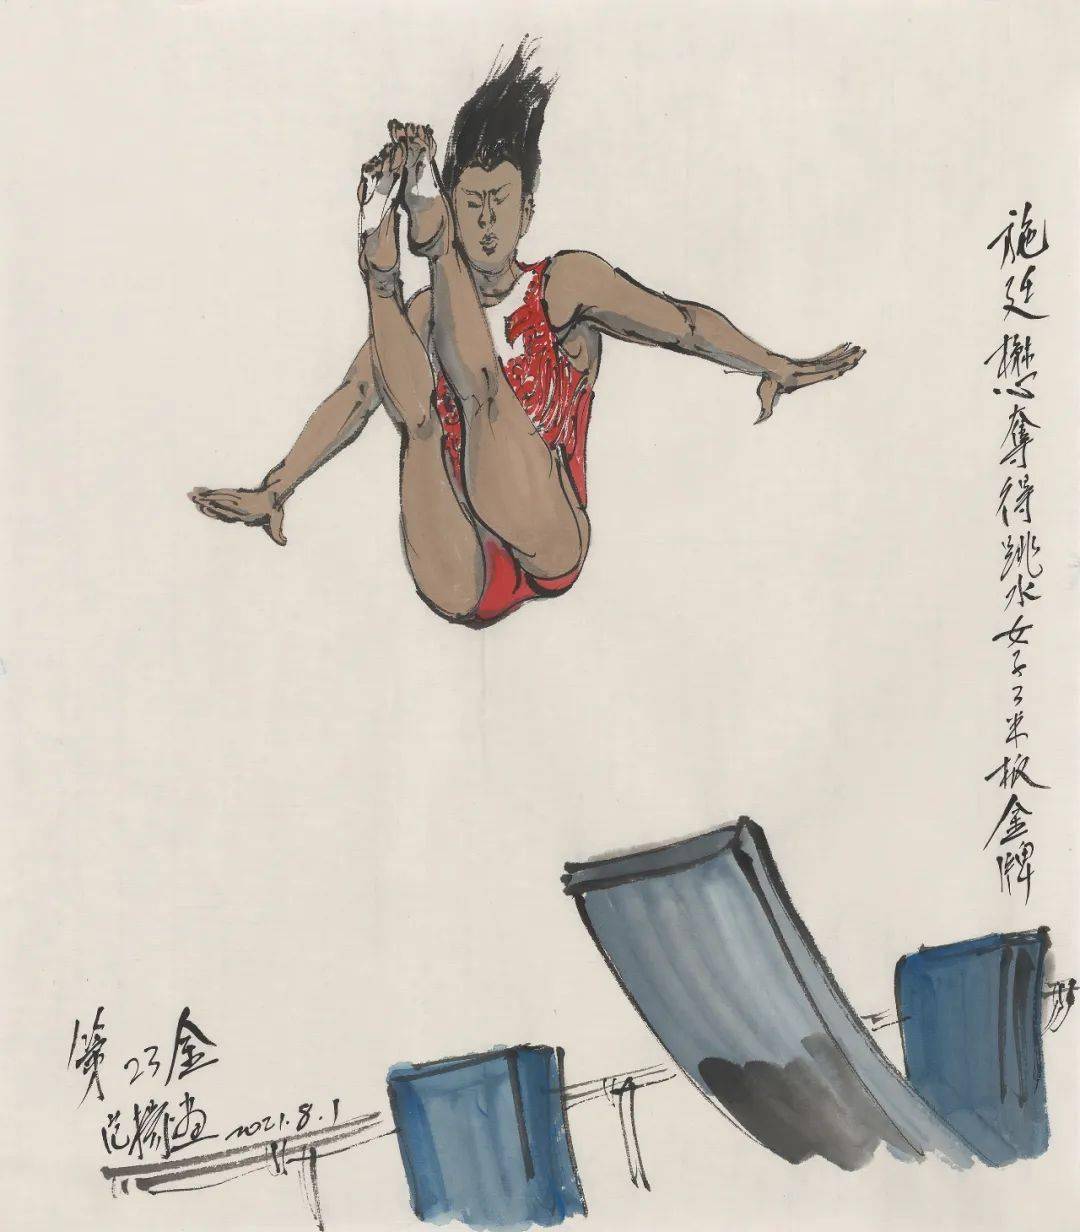 范扬世事绘 | 夺金时刻显风采——我画东京奥运会中国